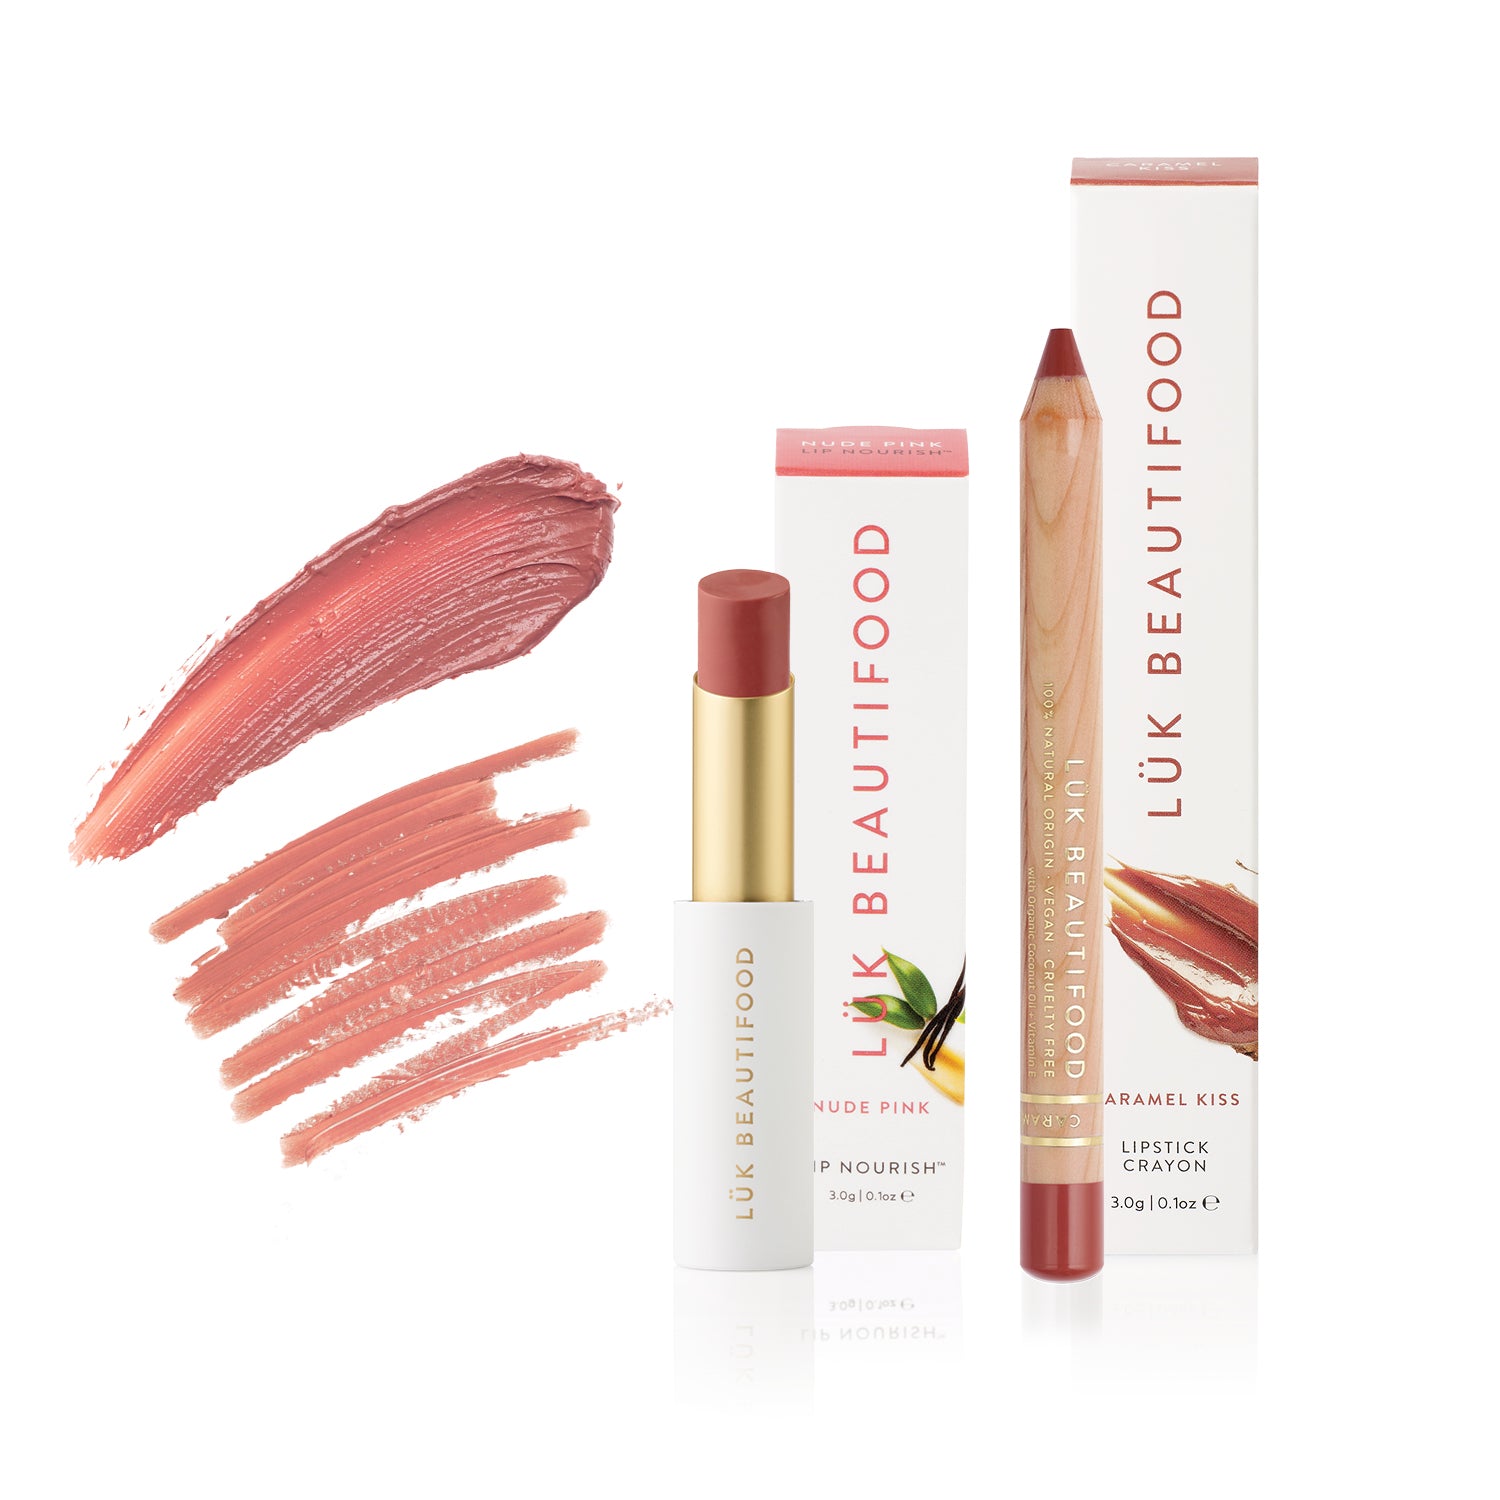 Natural Makeup Set - Lip Nourish Nude Pink and Lipstick Crayon Caramel Kiss